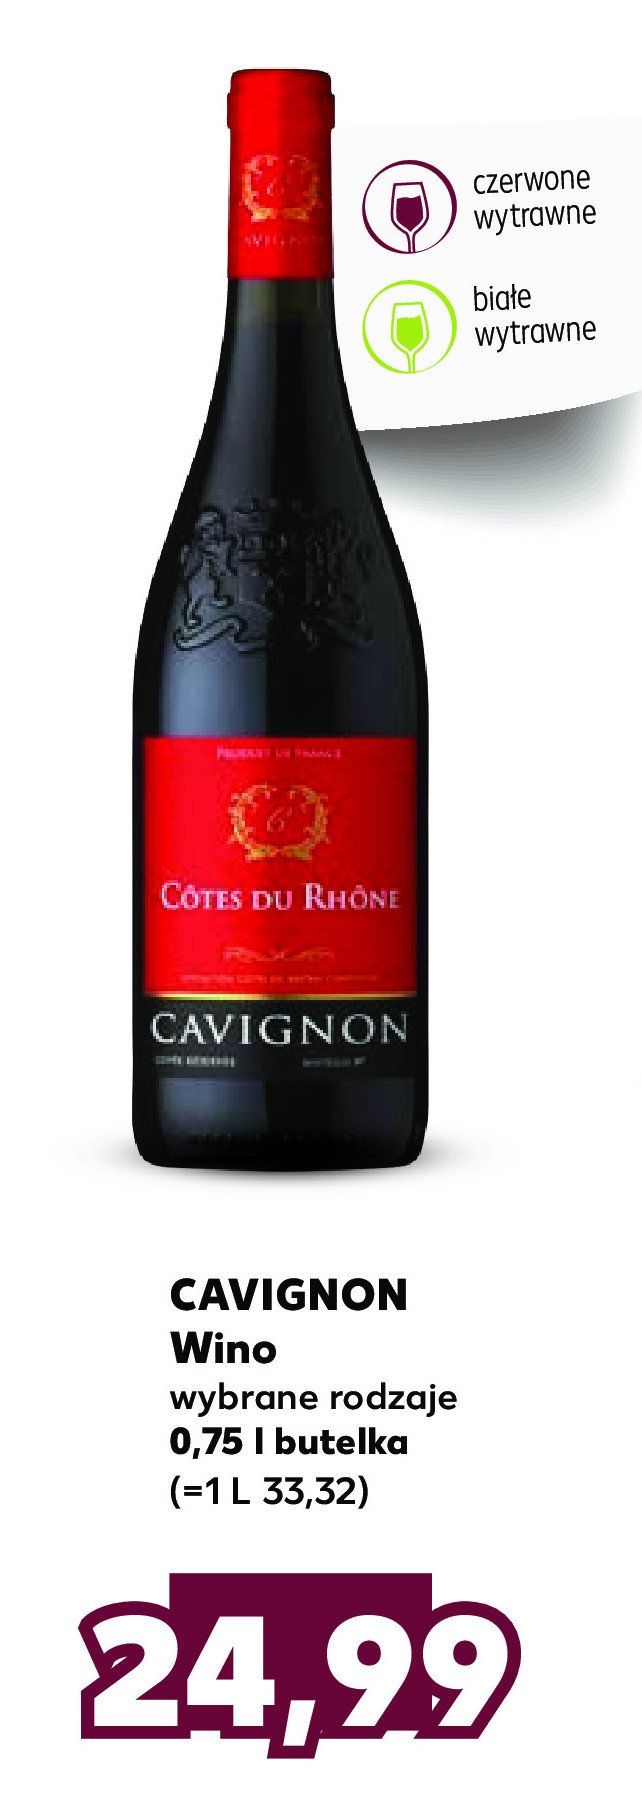 Wino CAVIGNON COTES DU RHONE promocja